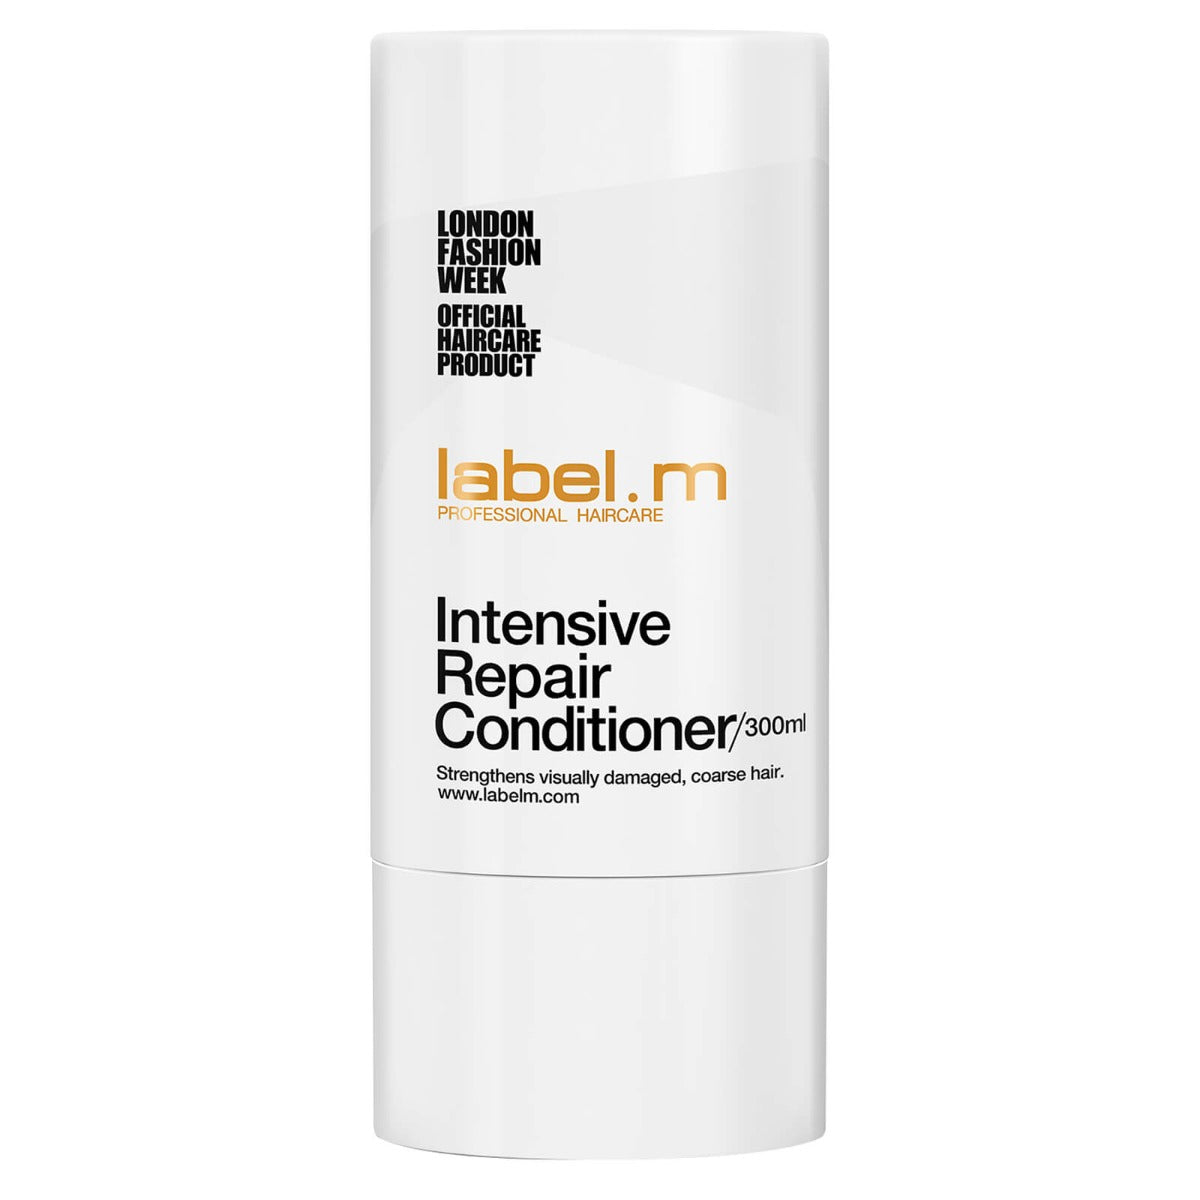 label.m Intensive Repair Conditioner 300ml